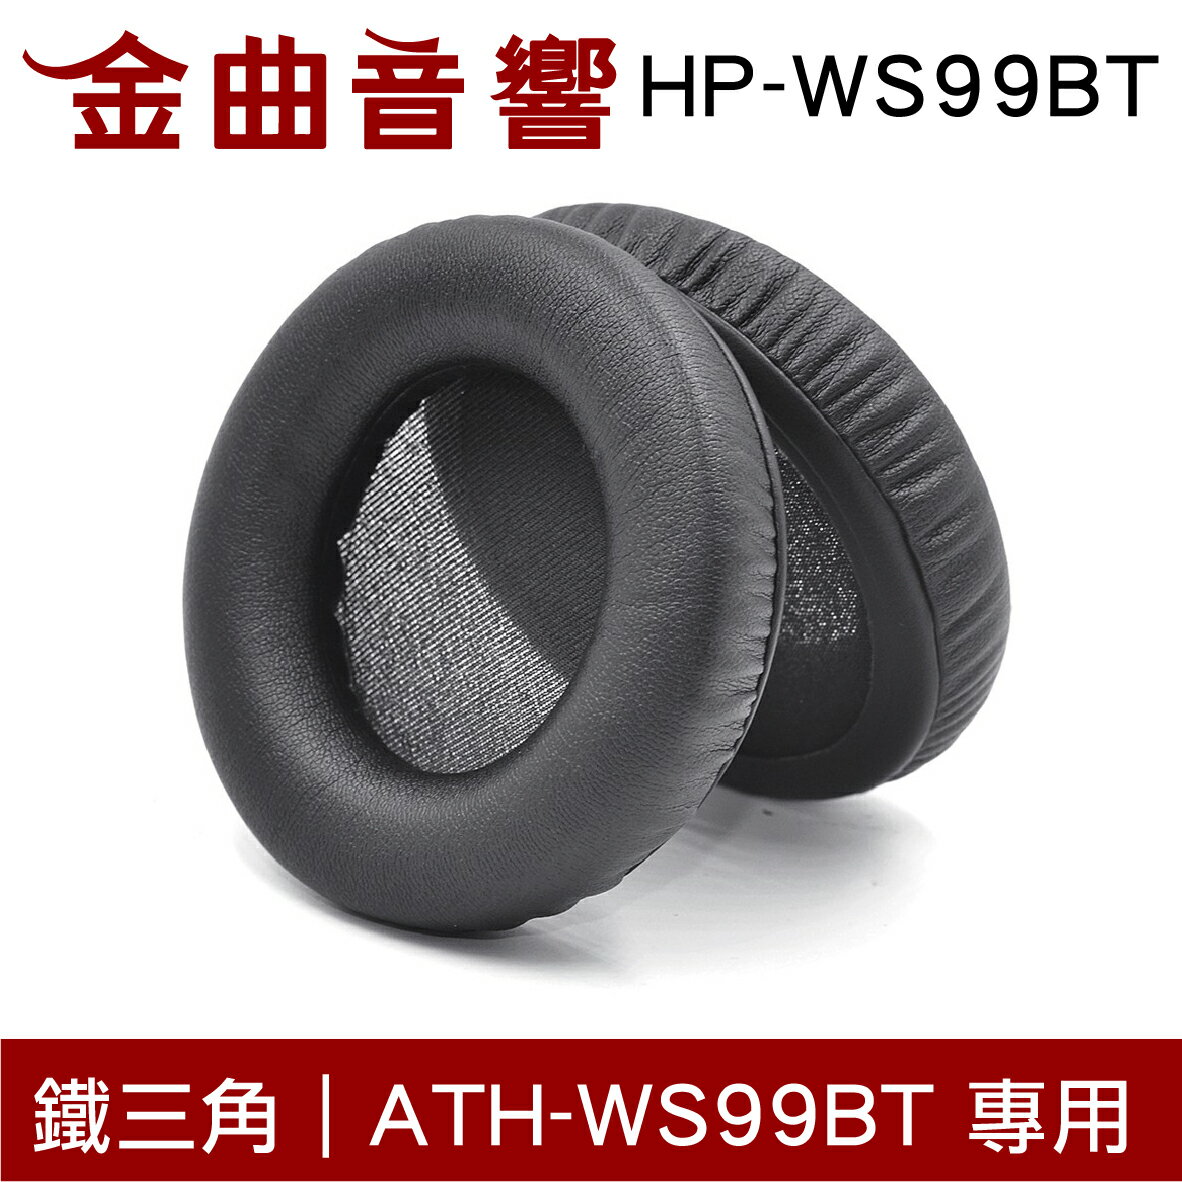 鐵三角 HP-WS99BT 替換耳罩 ATH-WS99BT 專用 | 金曲音響